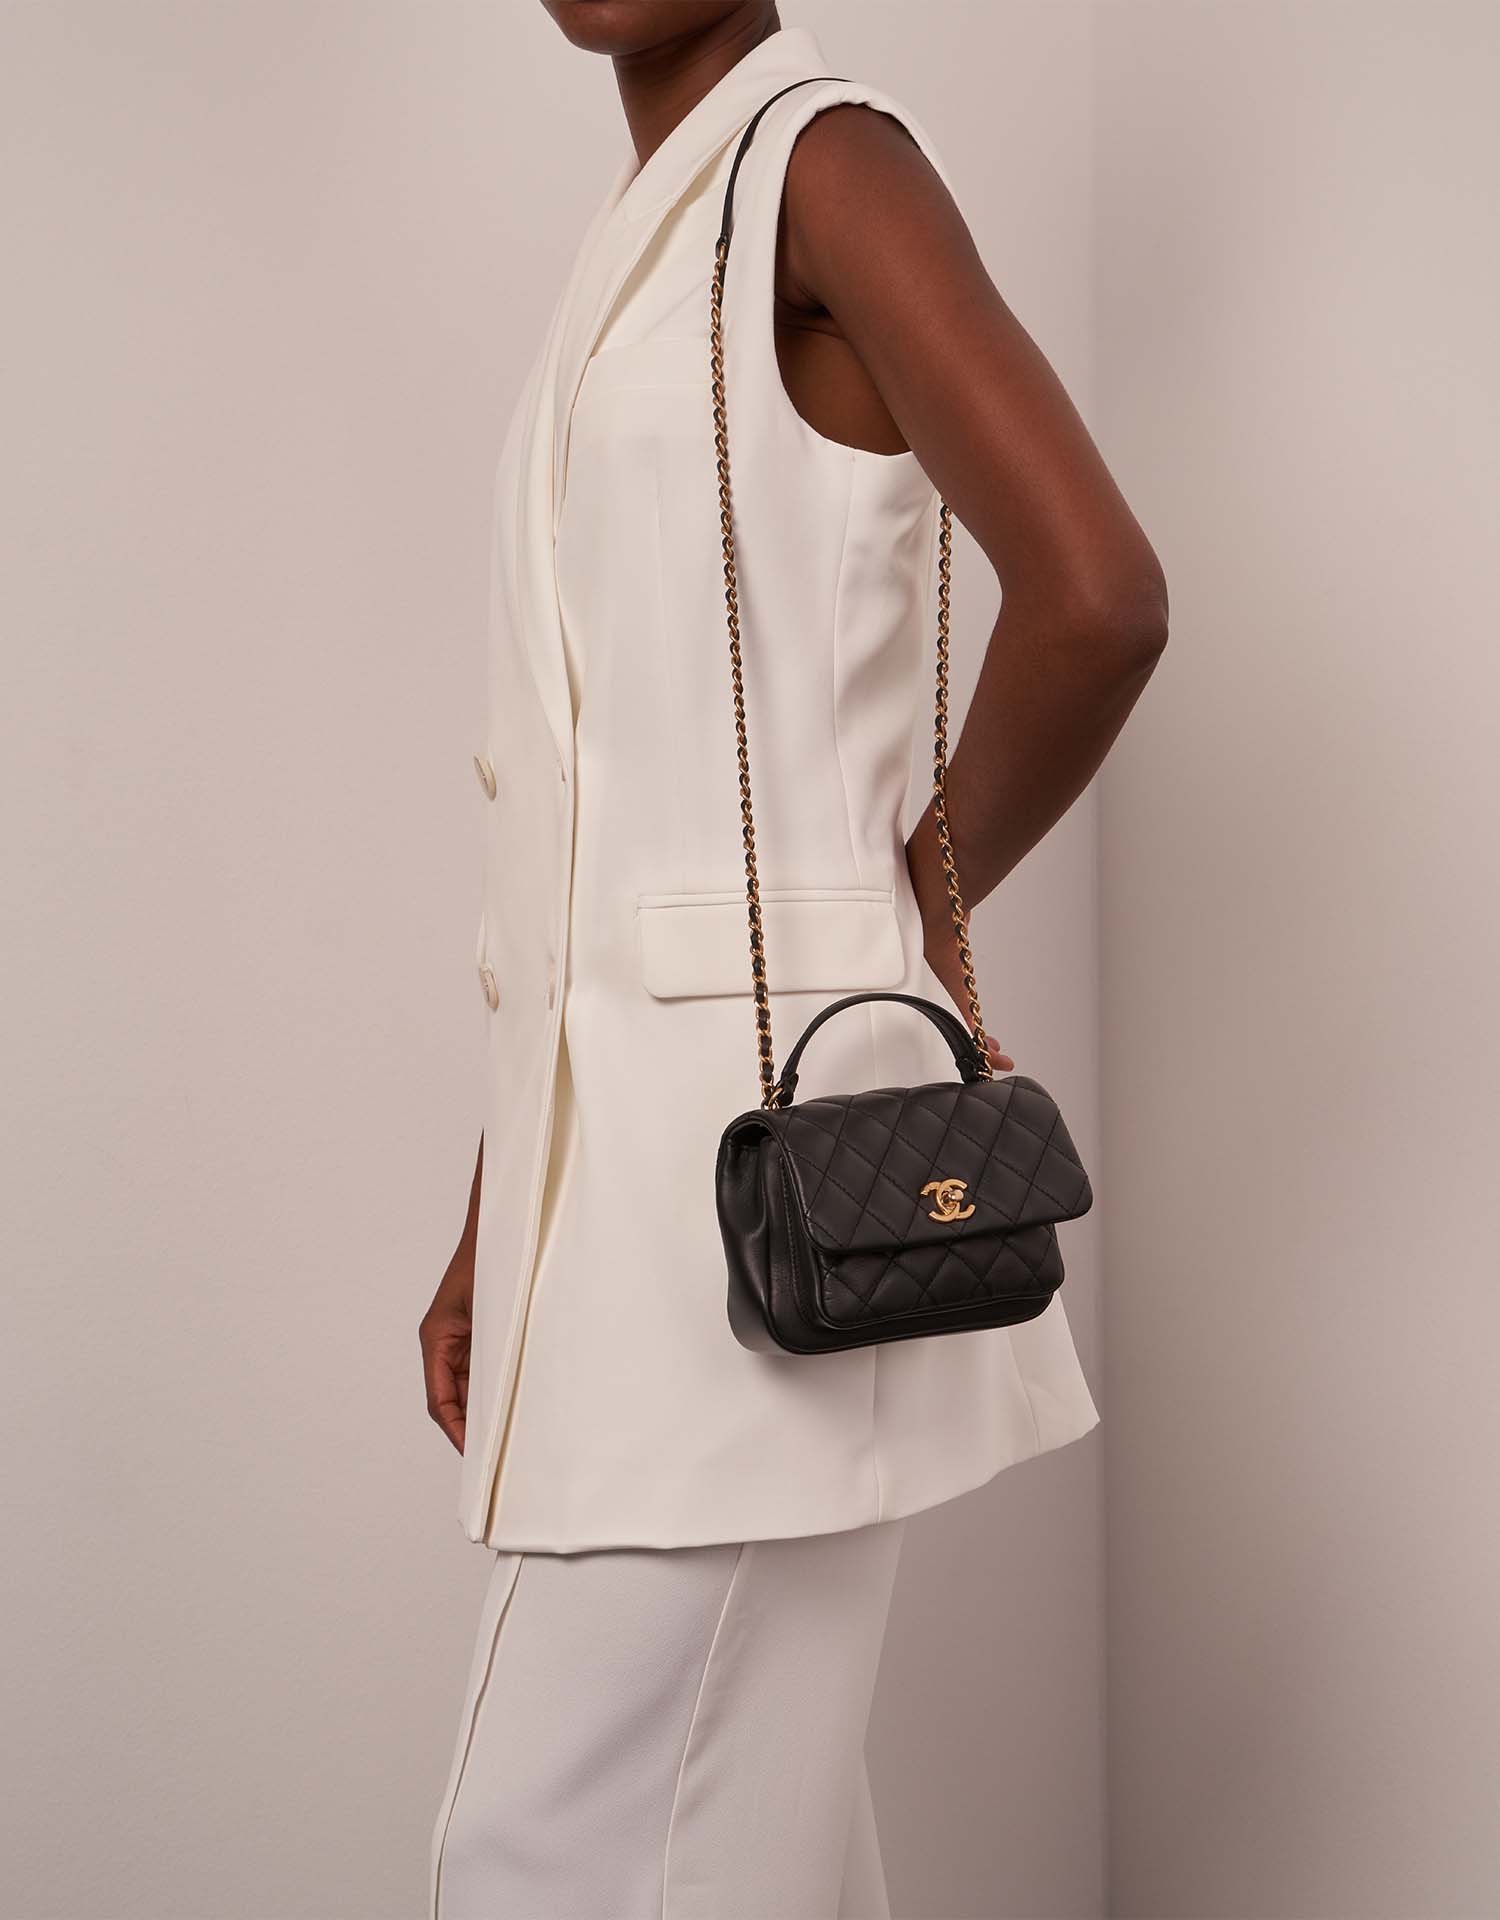 Chanel TimelessHandle Small Black Sizes Worn | Verkaufen Sie Ihre Designer-Tasche auf Saclab.com